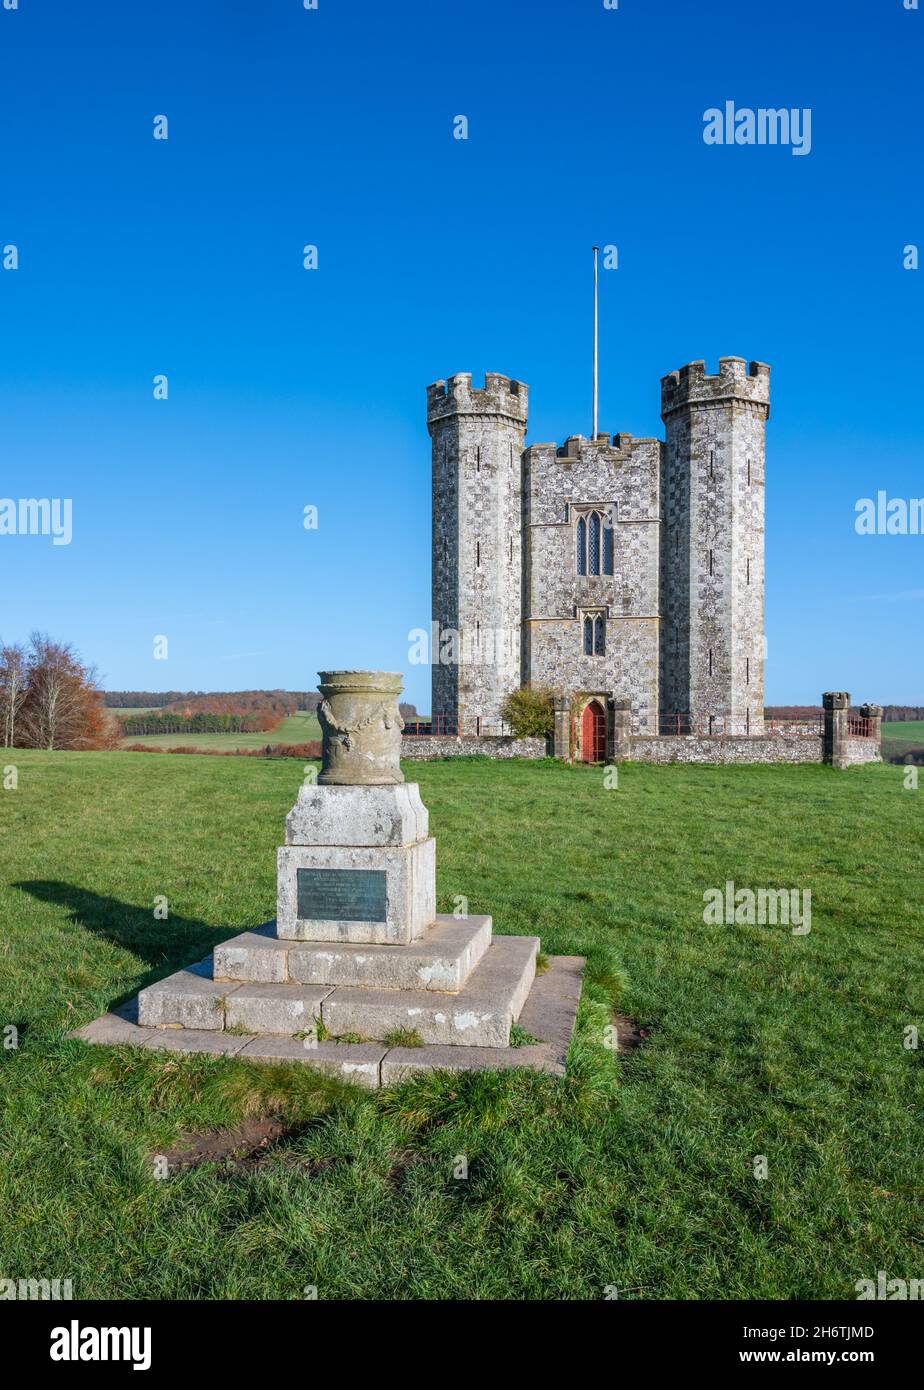 Denkmal der Belagerung von 1855, das von Admiral Lord Lyons Henry Granville, Herzog von Norfolk, und Hiorne Tower (Torheit) im Arundel Park, West Sussex, Großbritannien, überreicht wurde. Stockfoto